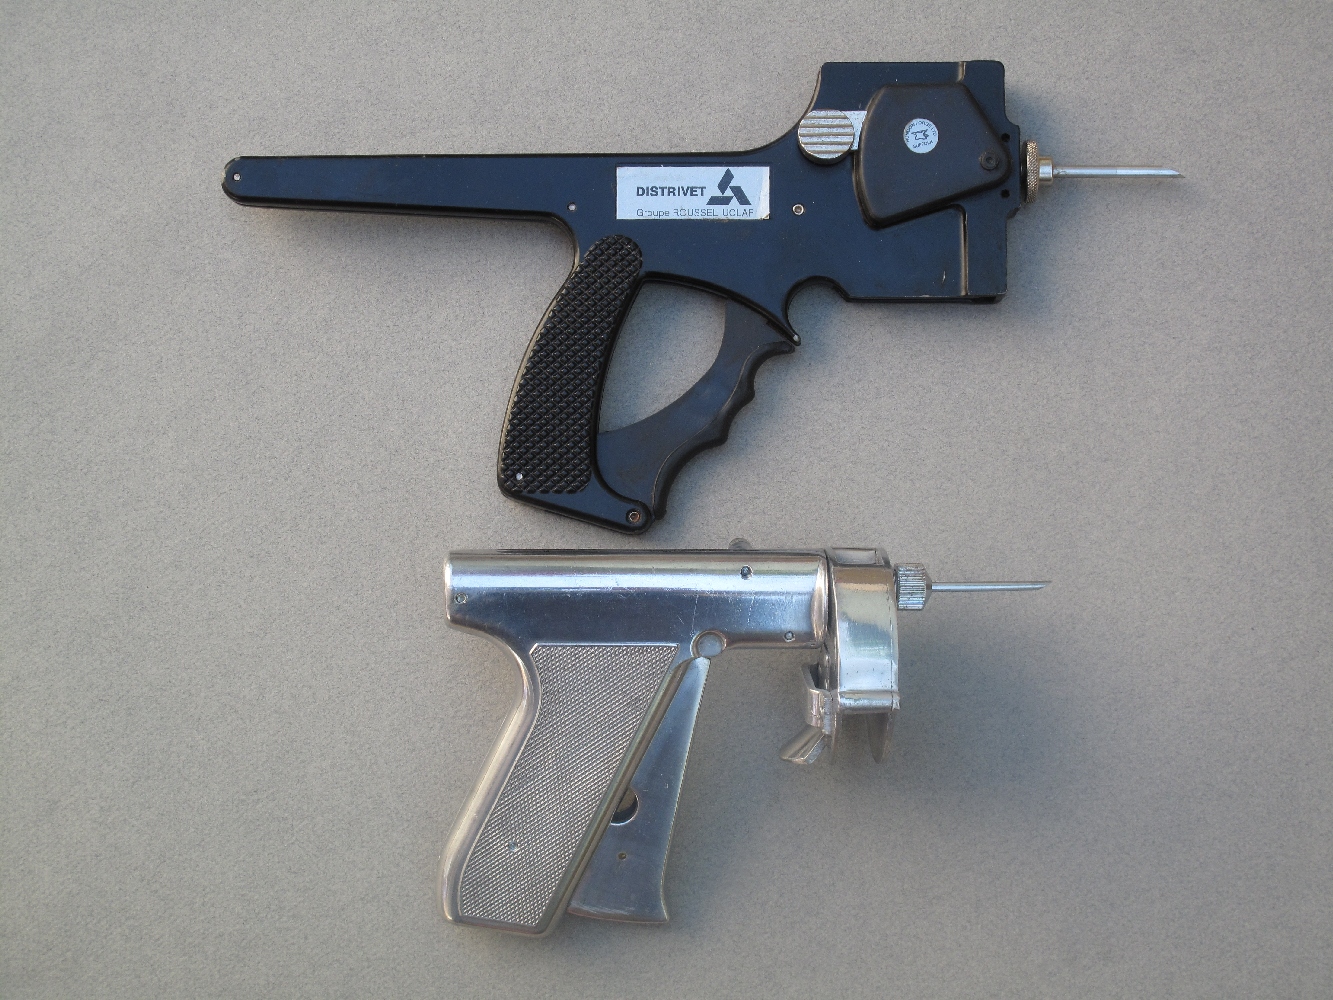 Voici deux anciens pistolets utilisés pour injecter des anabolisants (hormones de croissance) aux bovins. Celui du haut est un pistolet Distrivet, qui utilise un chargeur vertical de dix doses tandis que l’autre est un revolver RalOgun, qui se charge au moyen d’un barillet contenant vingt-quatre doses de produit.